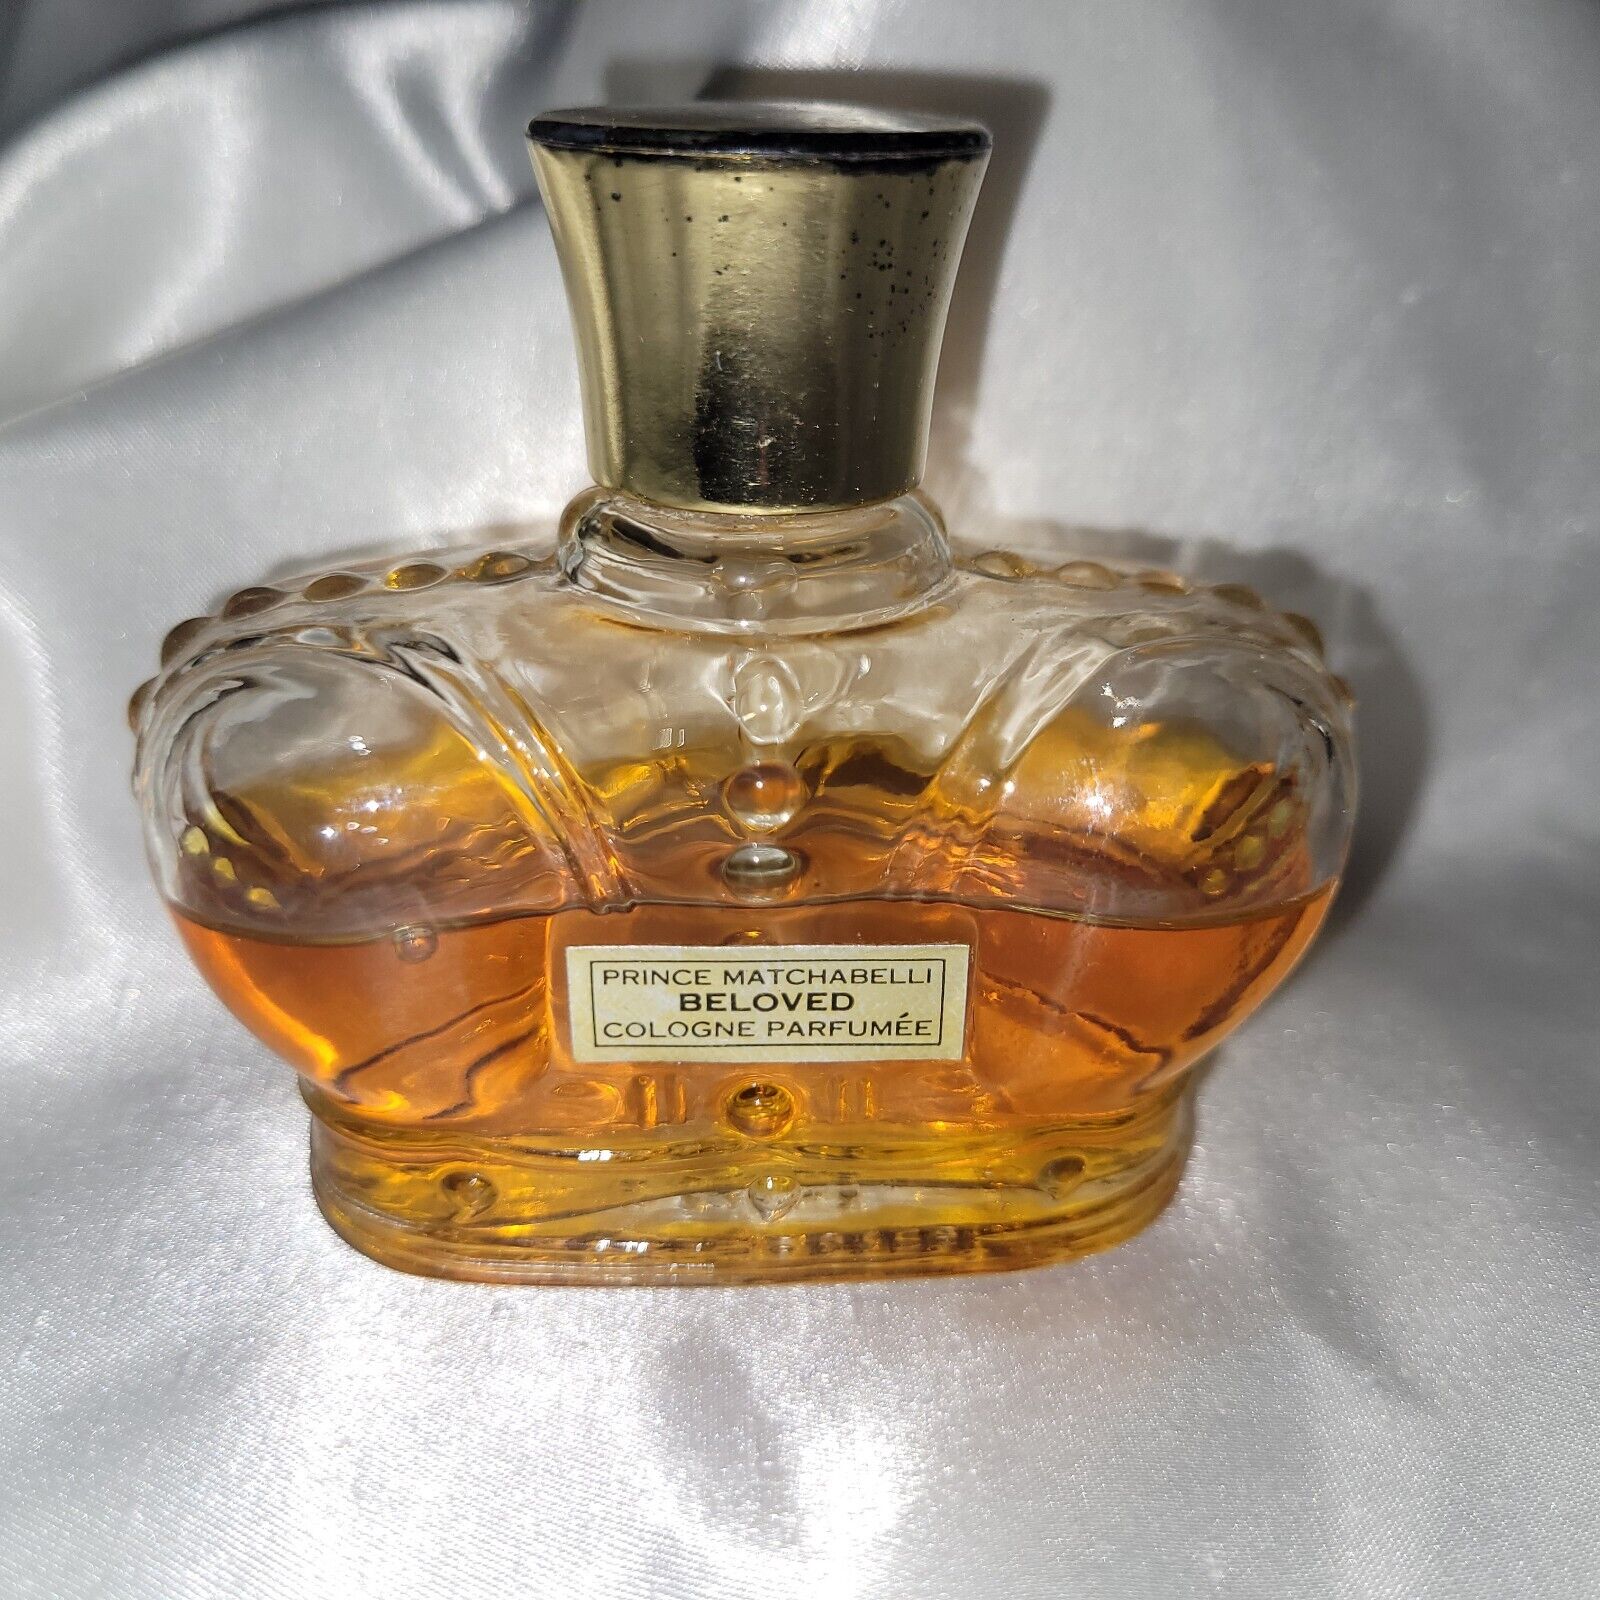 Vintage Beloved Prince Matchabelli Cologne Parfumee Perfume  1 oz. 